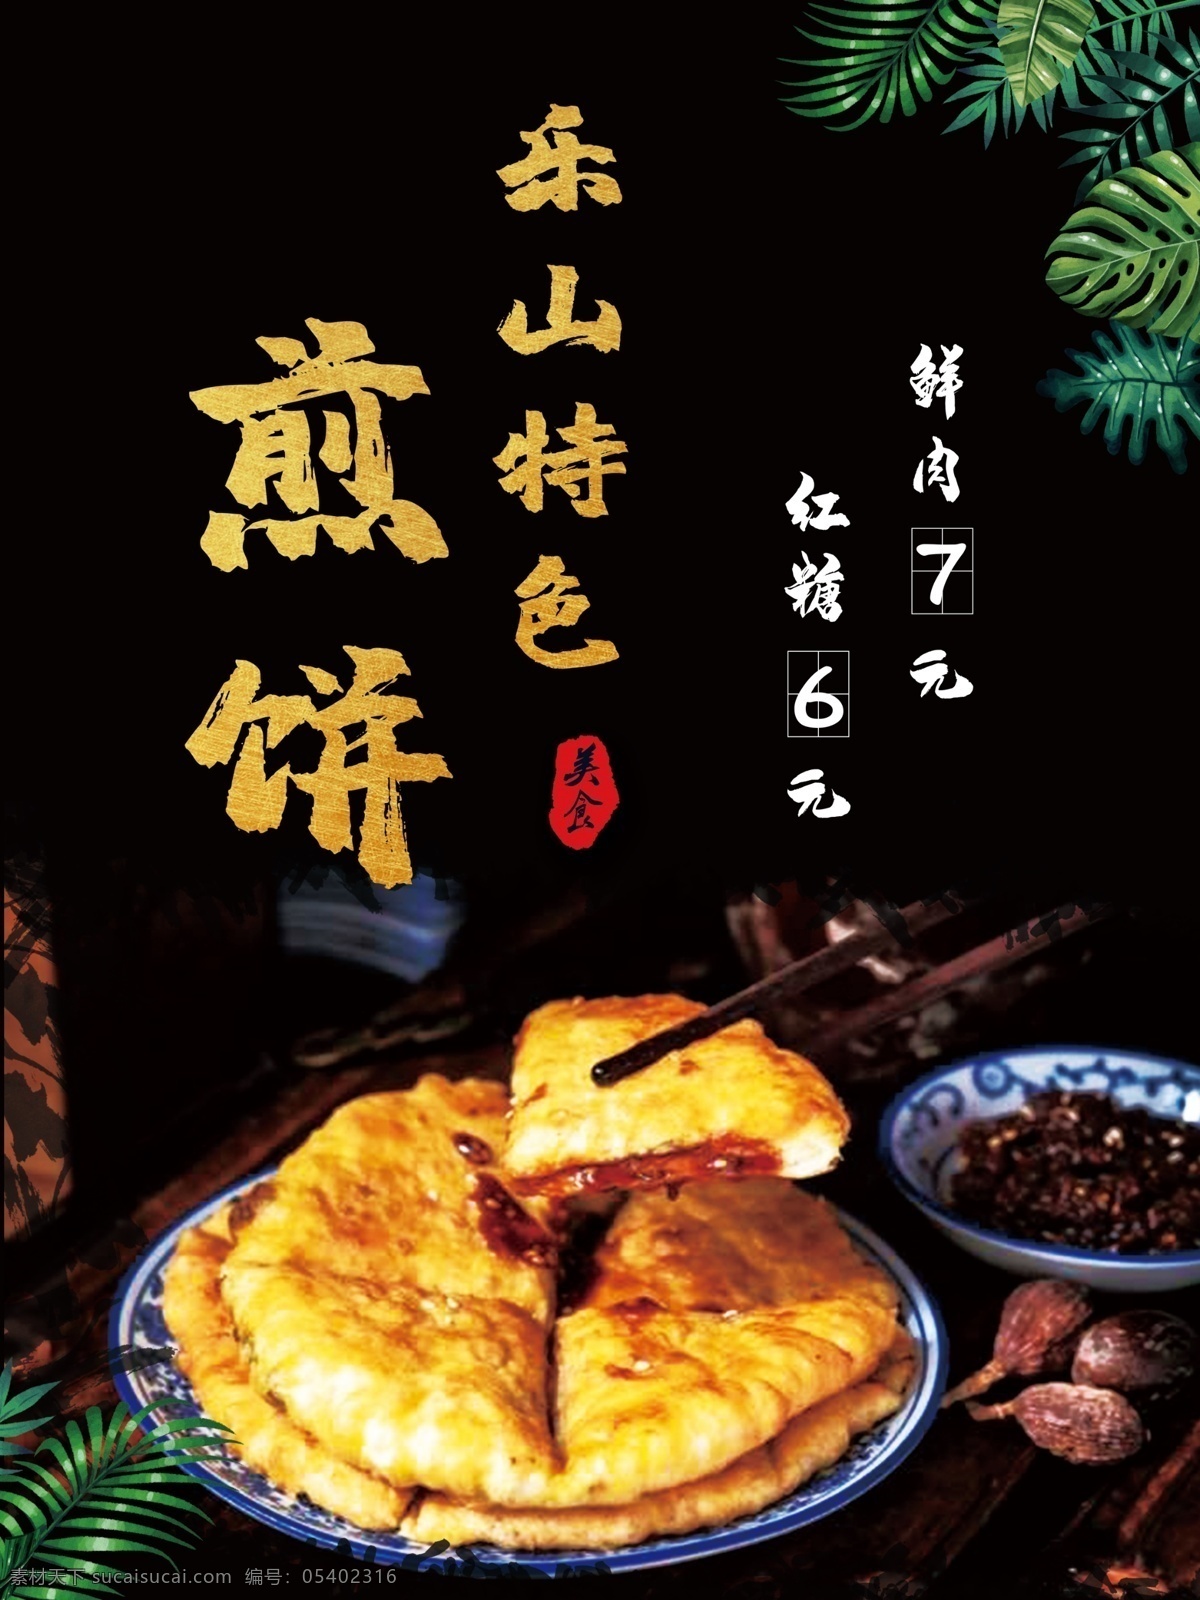 乐山煎饼图片 乐山 煎饼 特色 美食 煎饼海报 分层